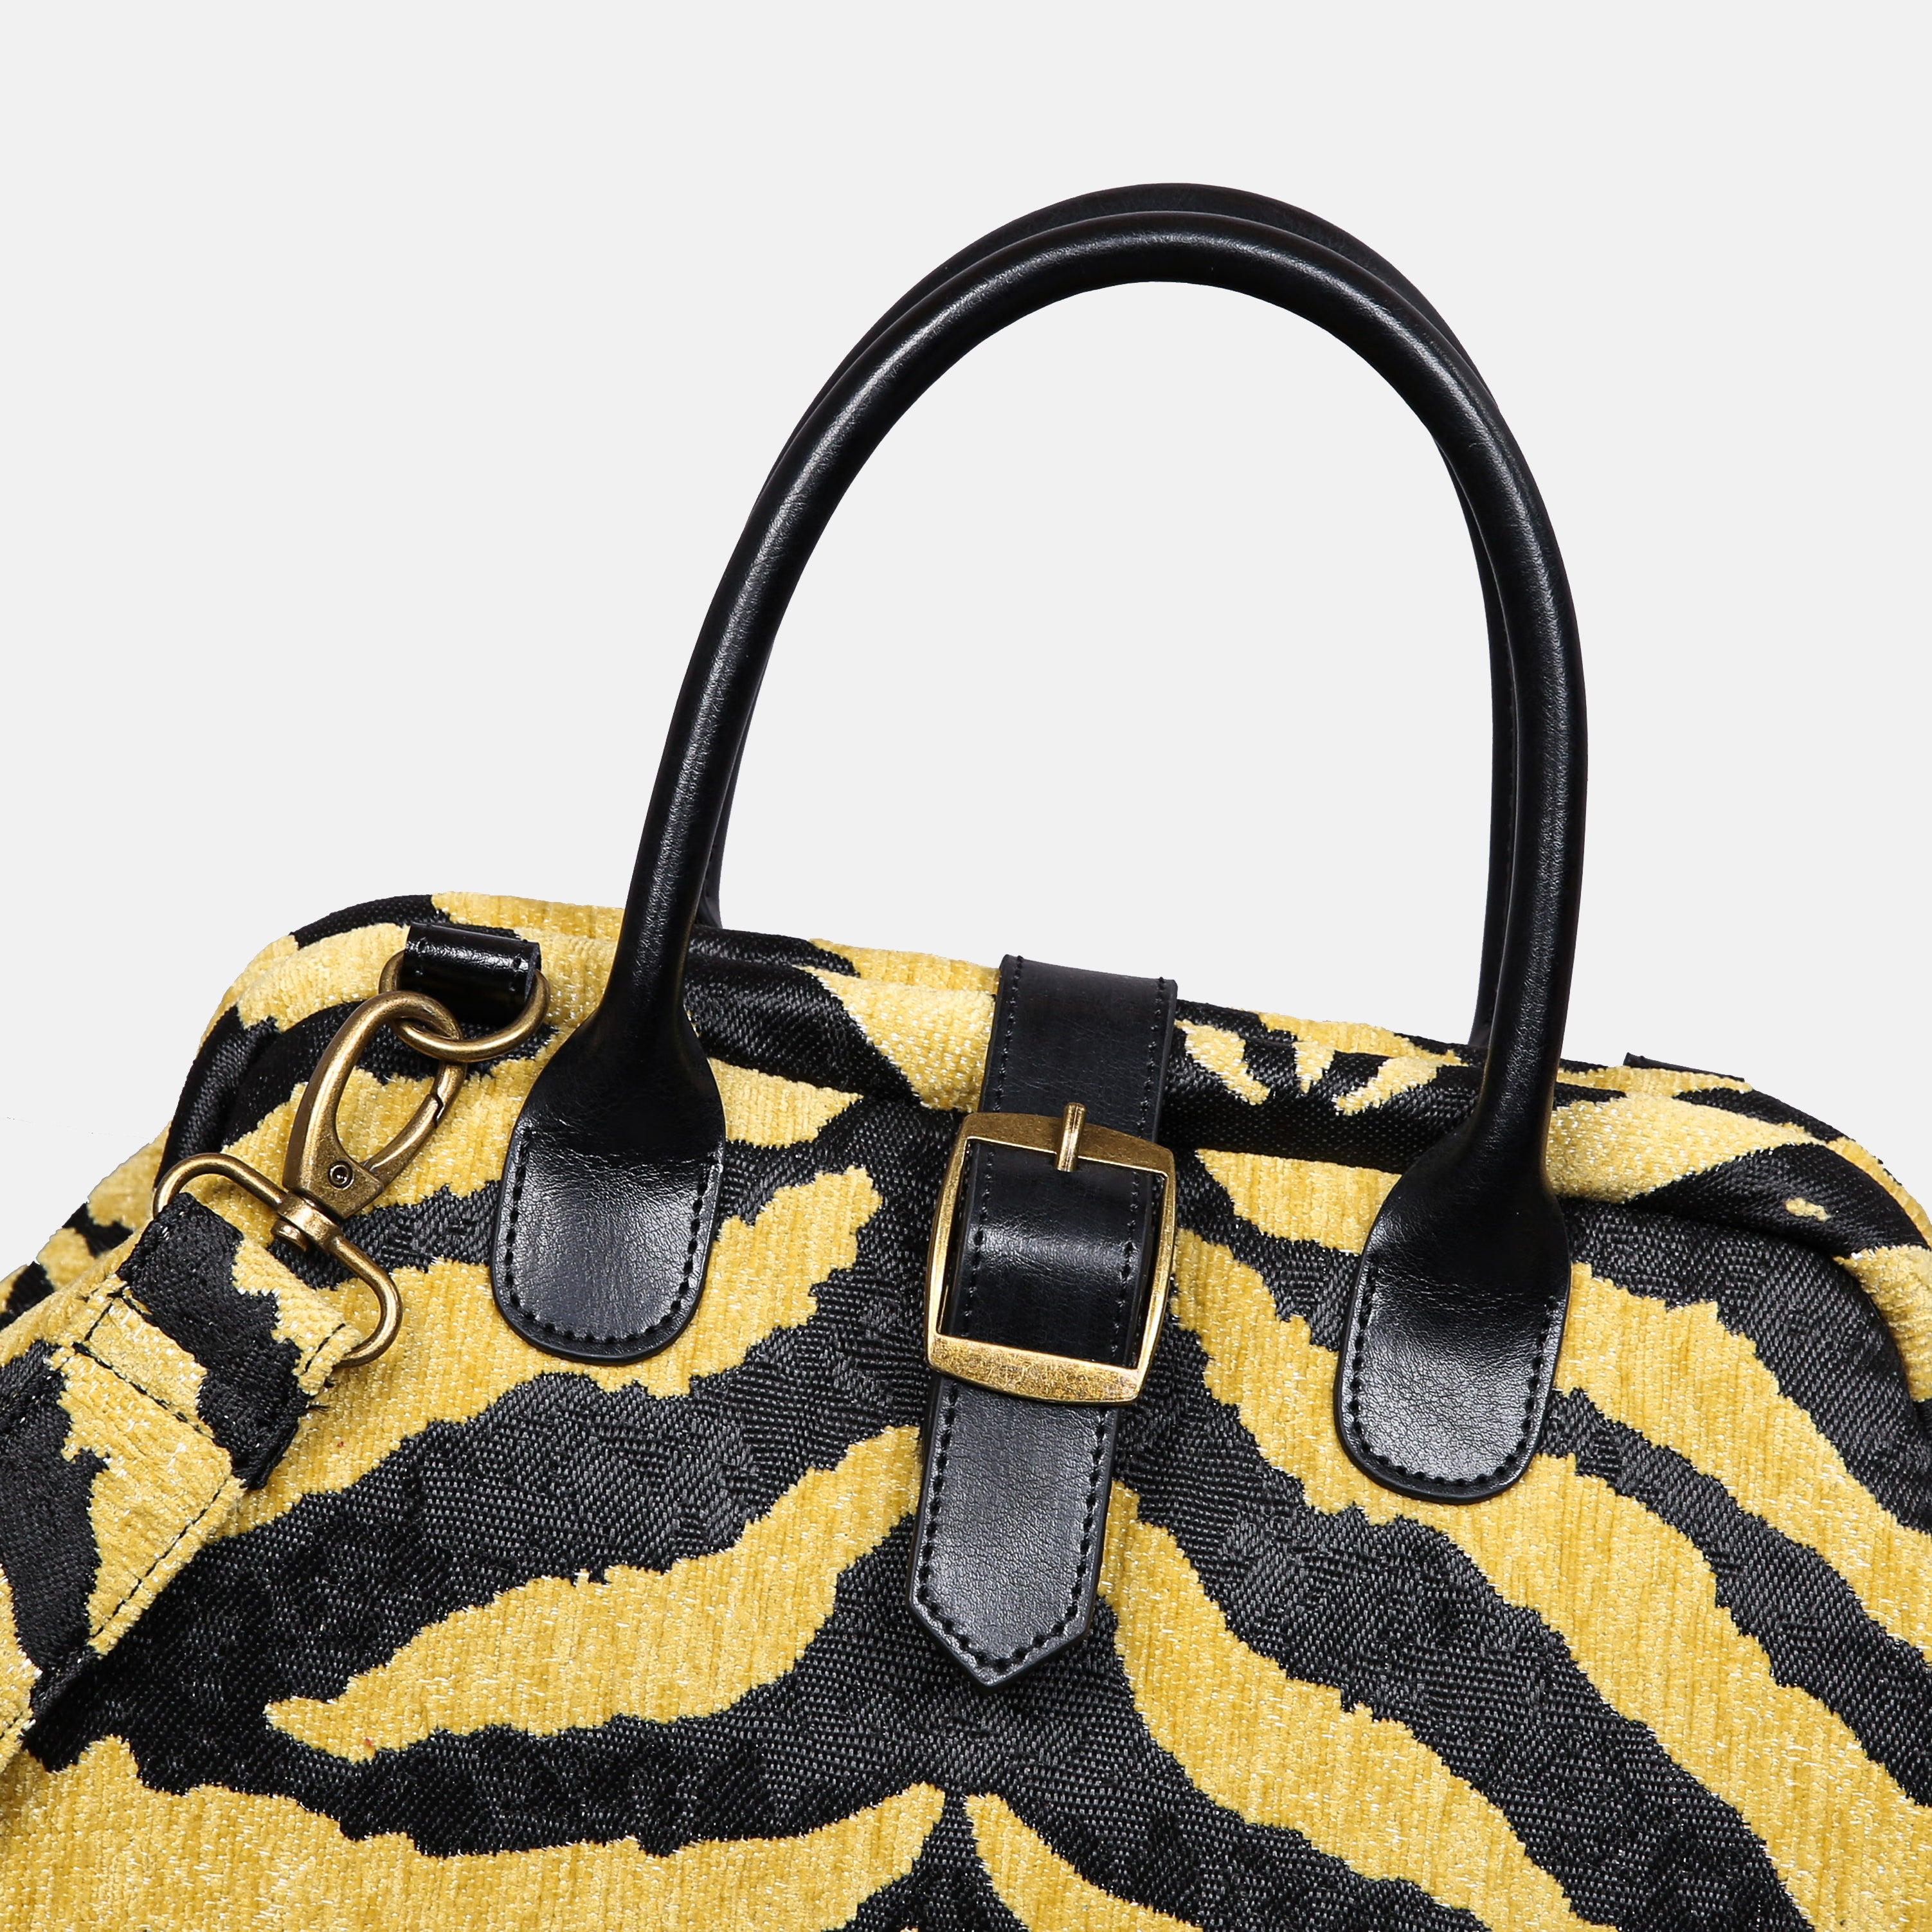 Zebra Daffodil Carpet Handbag Purse carpet bag MCW Handmade-5